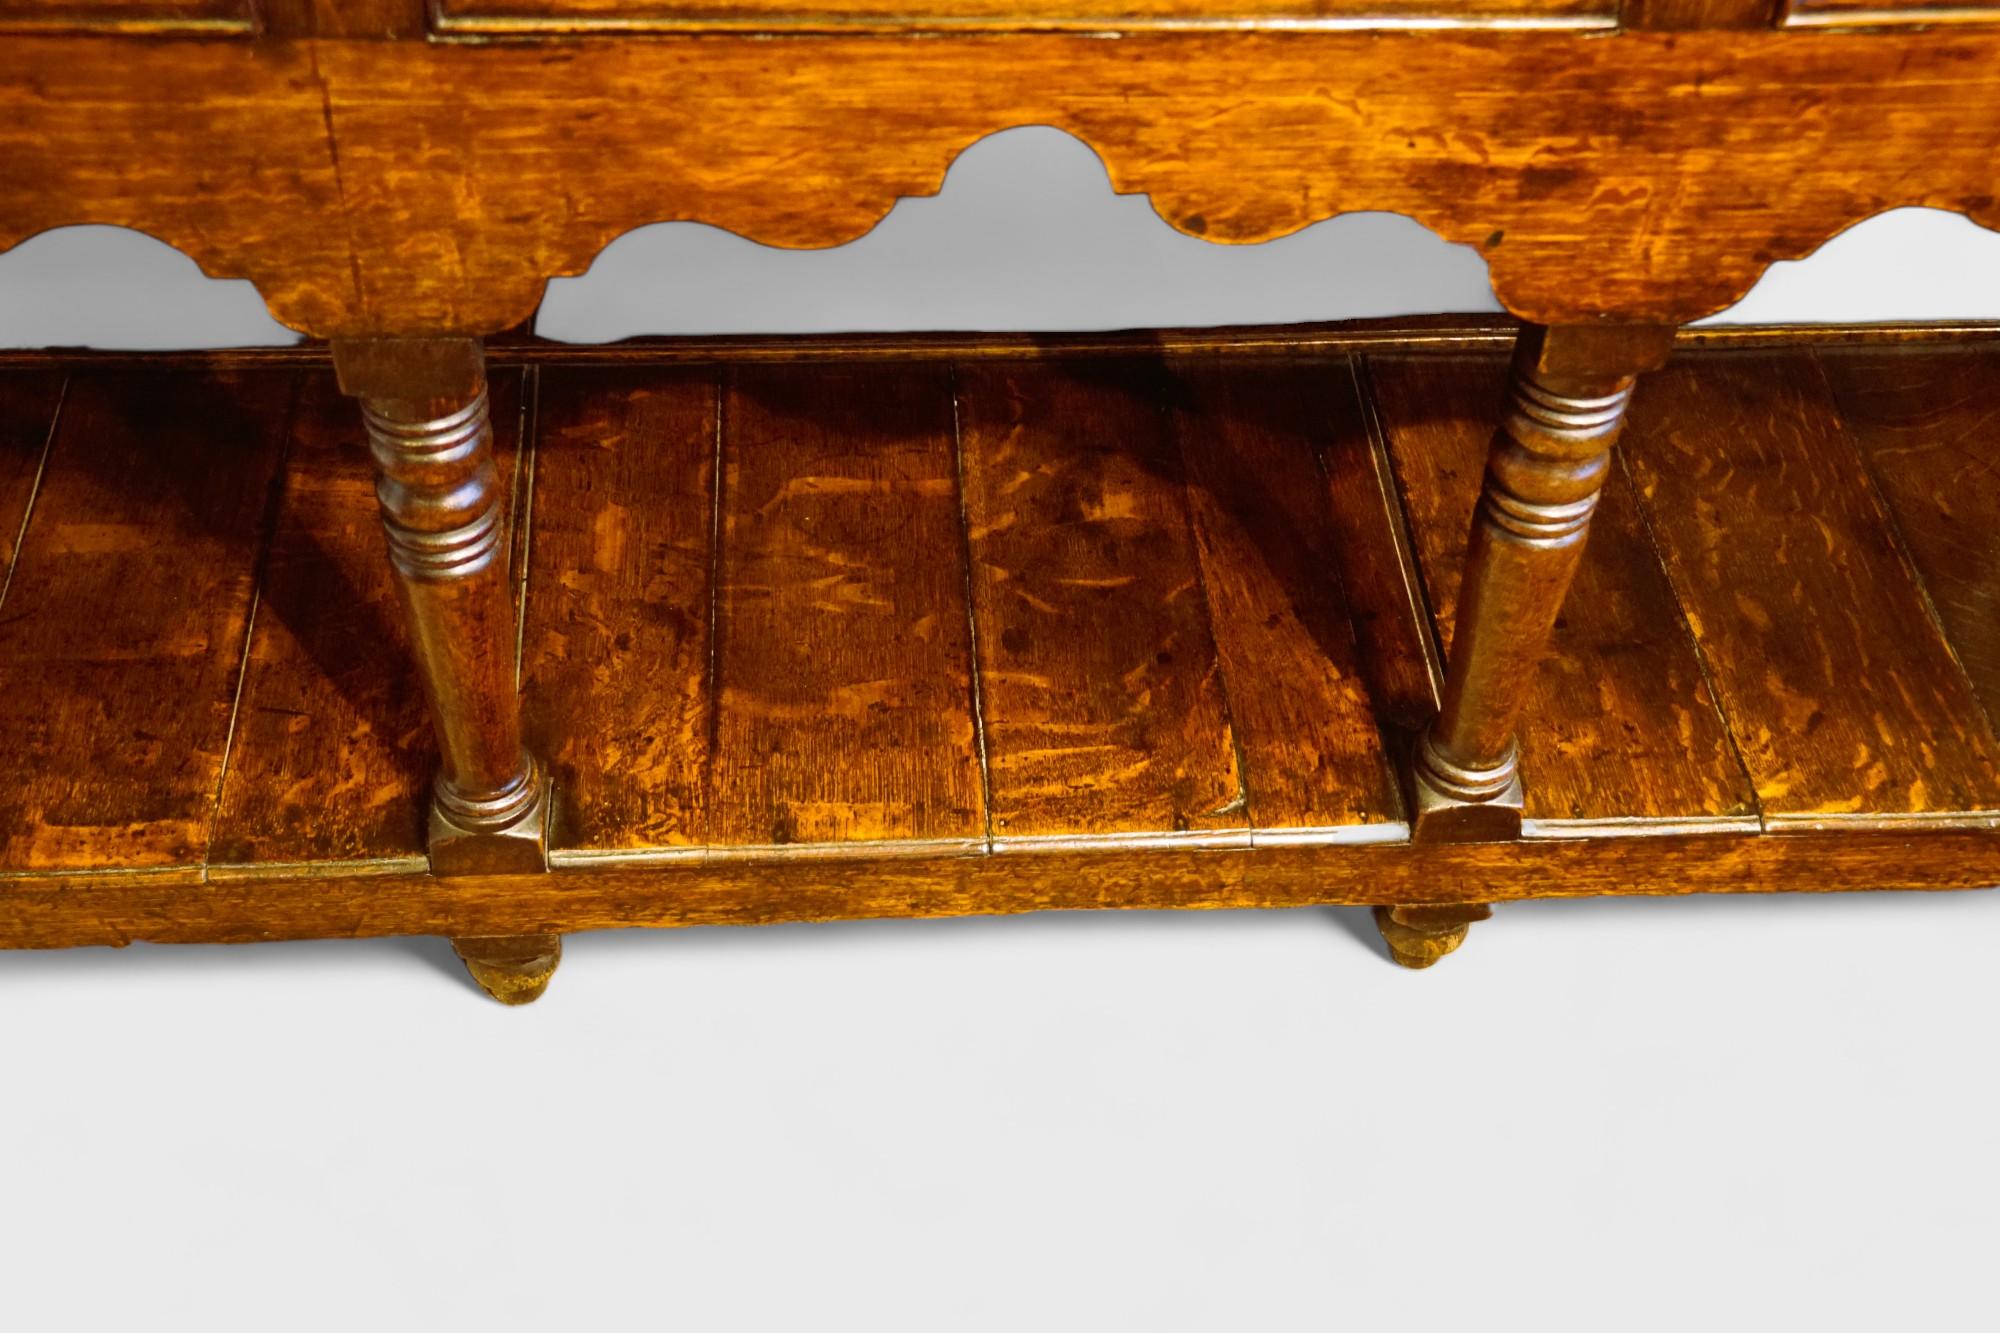 Antike Eichenholz-Kommode 
Diese antike Eichenholzkommode wurde um 1810 hergestellt.
Es ist mit 3 Schubladen mit Schwenkgriffen und Messingrückwänden ausgestattet, die sich über der attraktiv geformten Schürze befinden.
Es gibt 3 gut gedrehte Beine